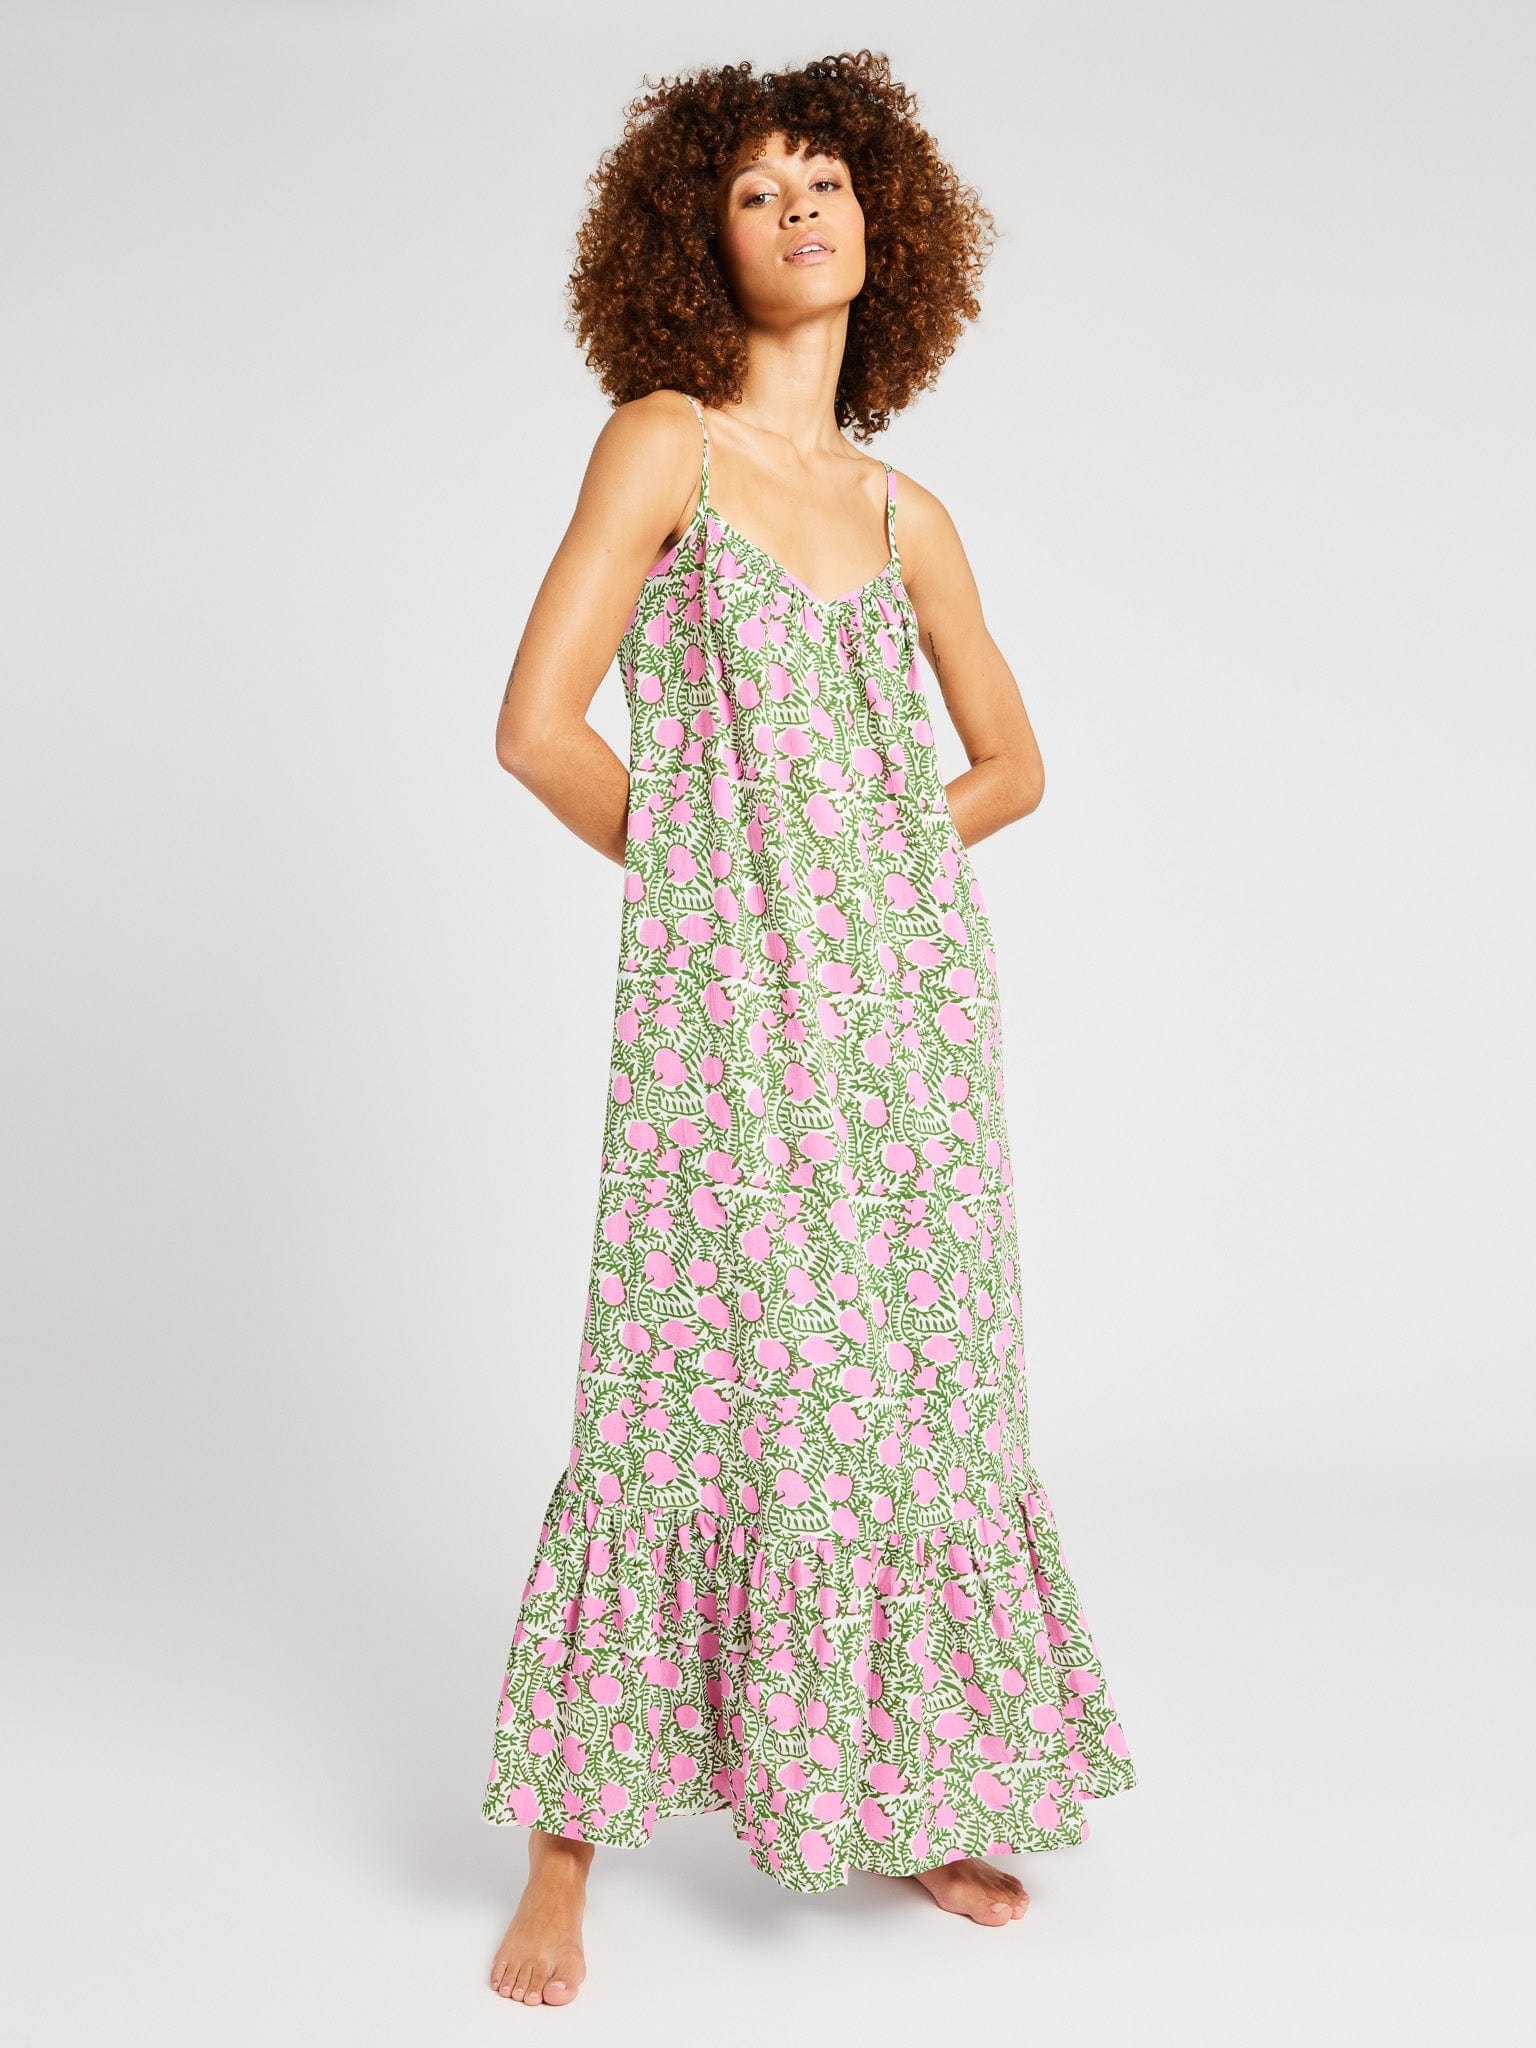 MILLE Clothing Sienna Dress in Pink Lemonade